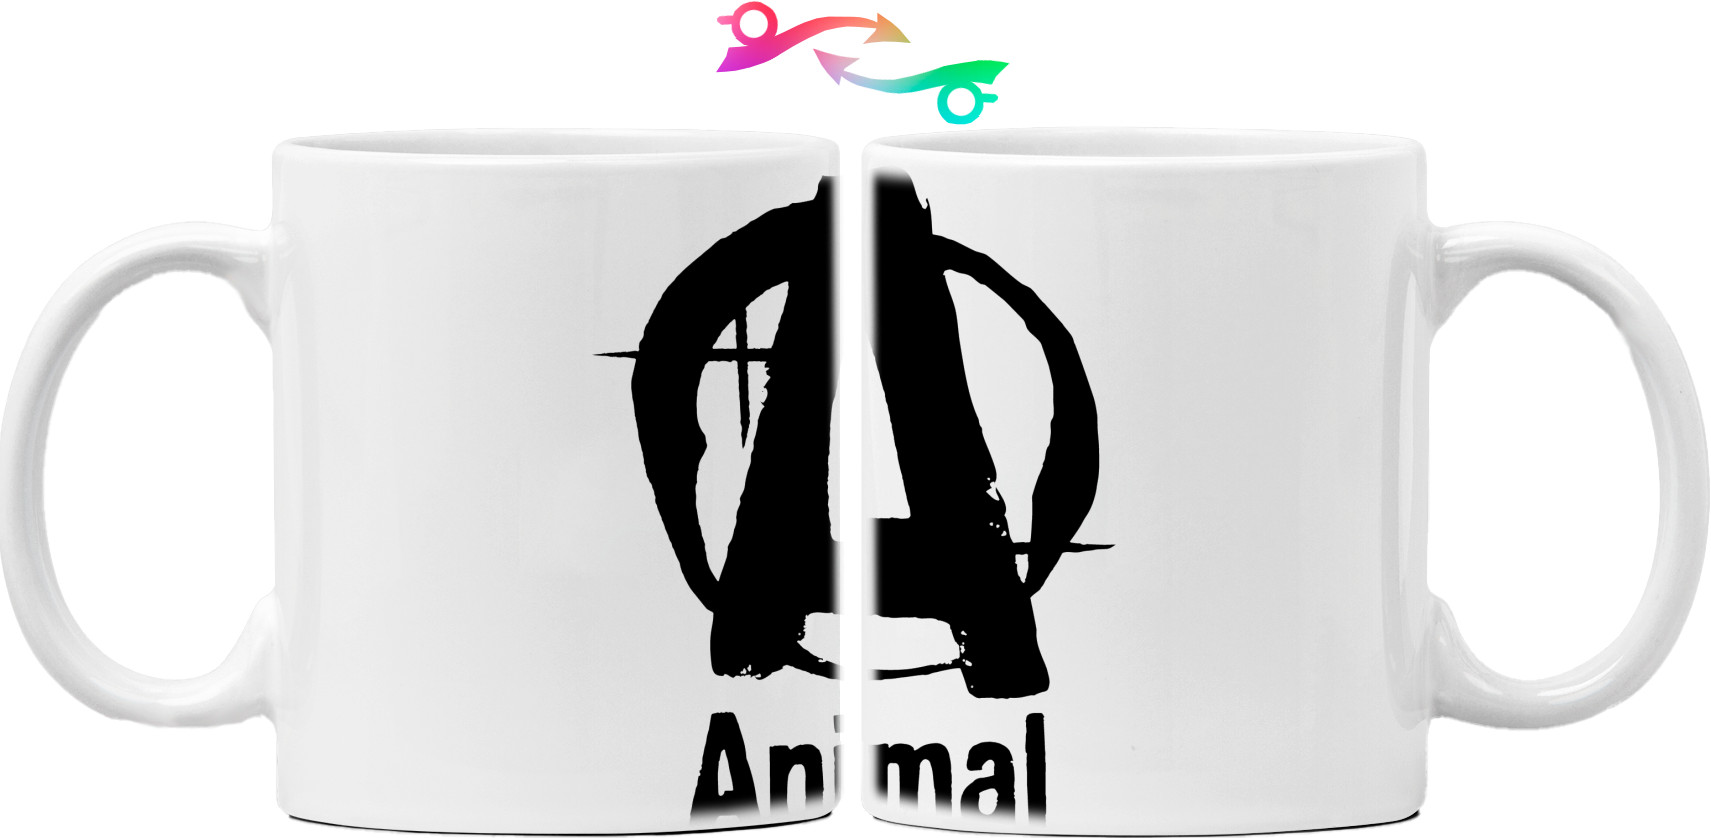 Animal powerlifting logo